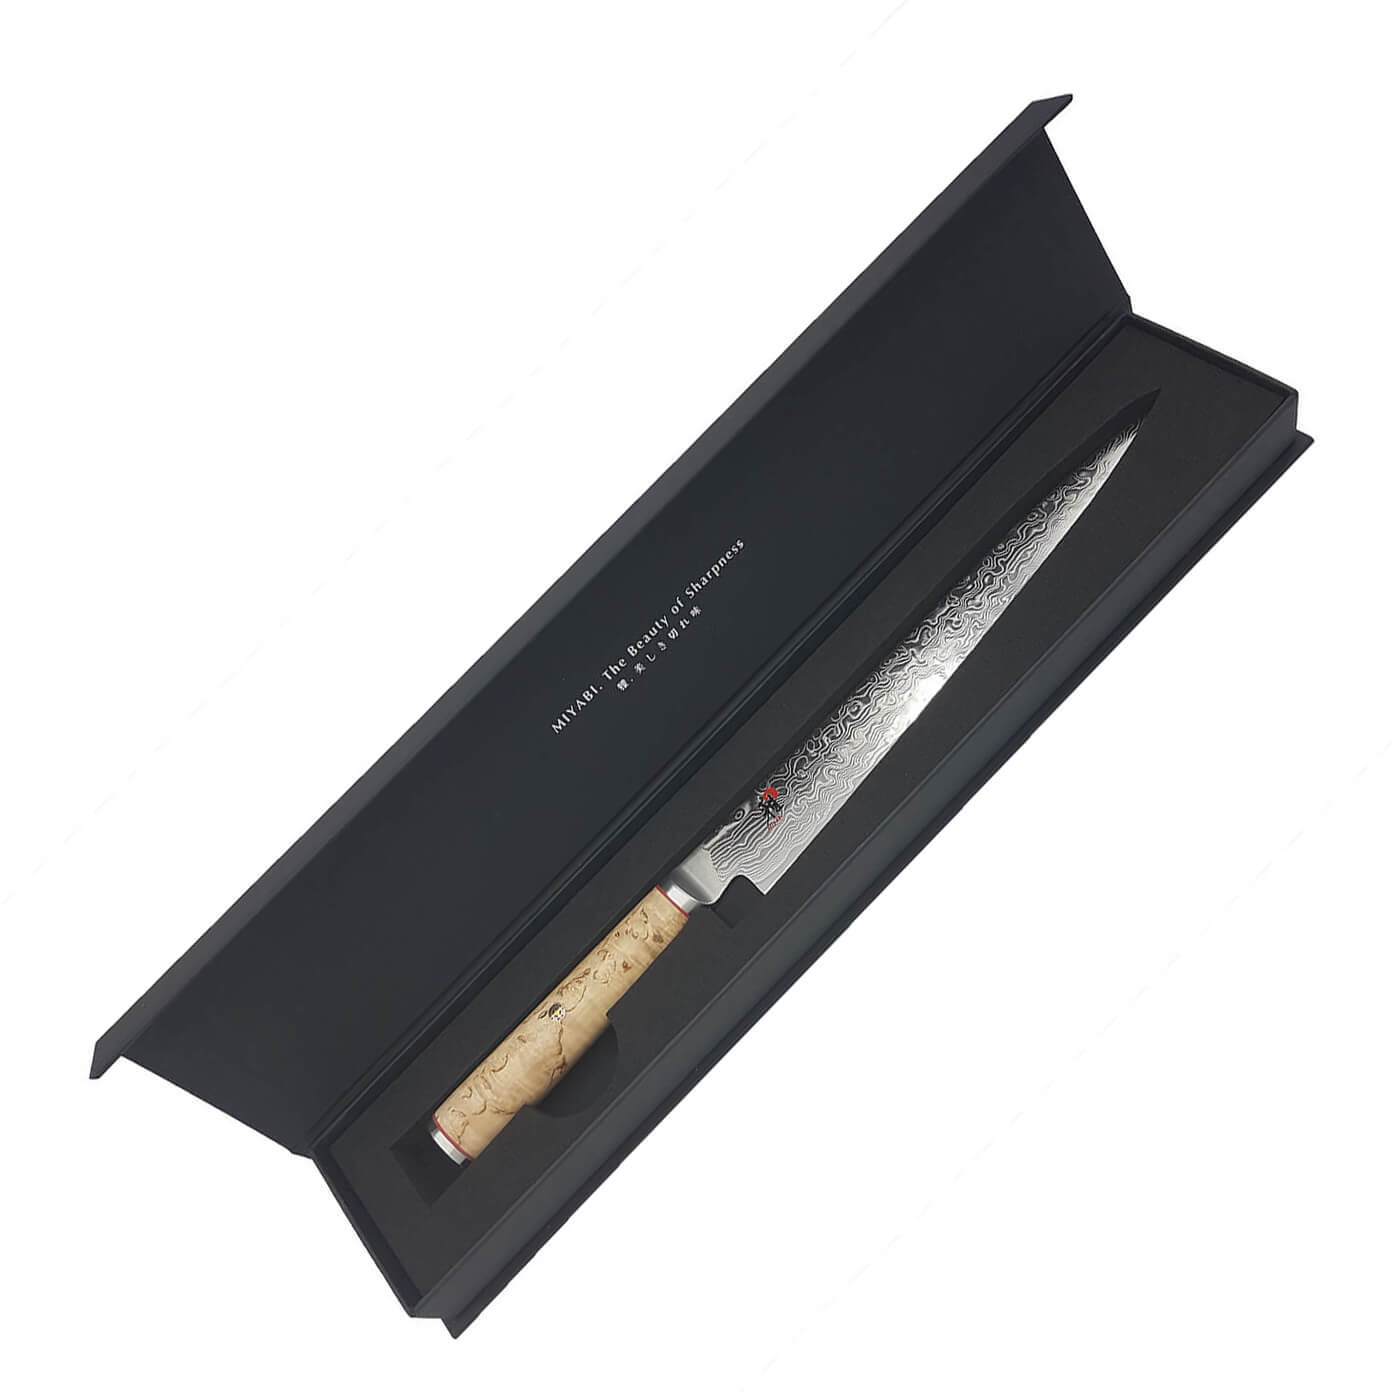 Miyabi 5000MCD Sujihiki knife, ref: 34378-241